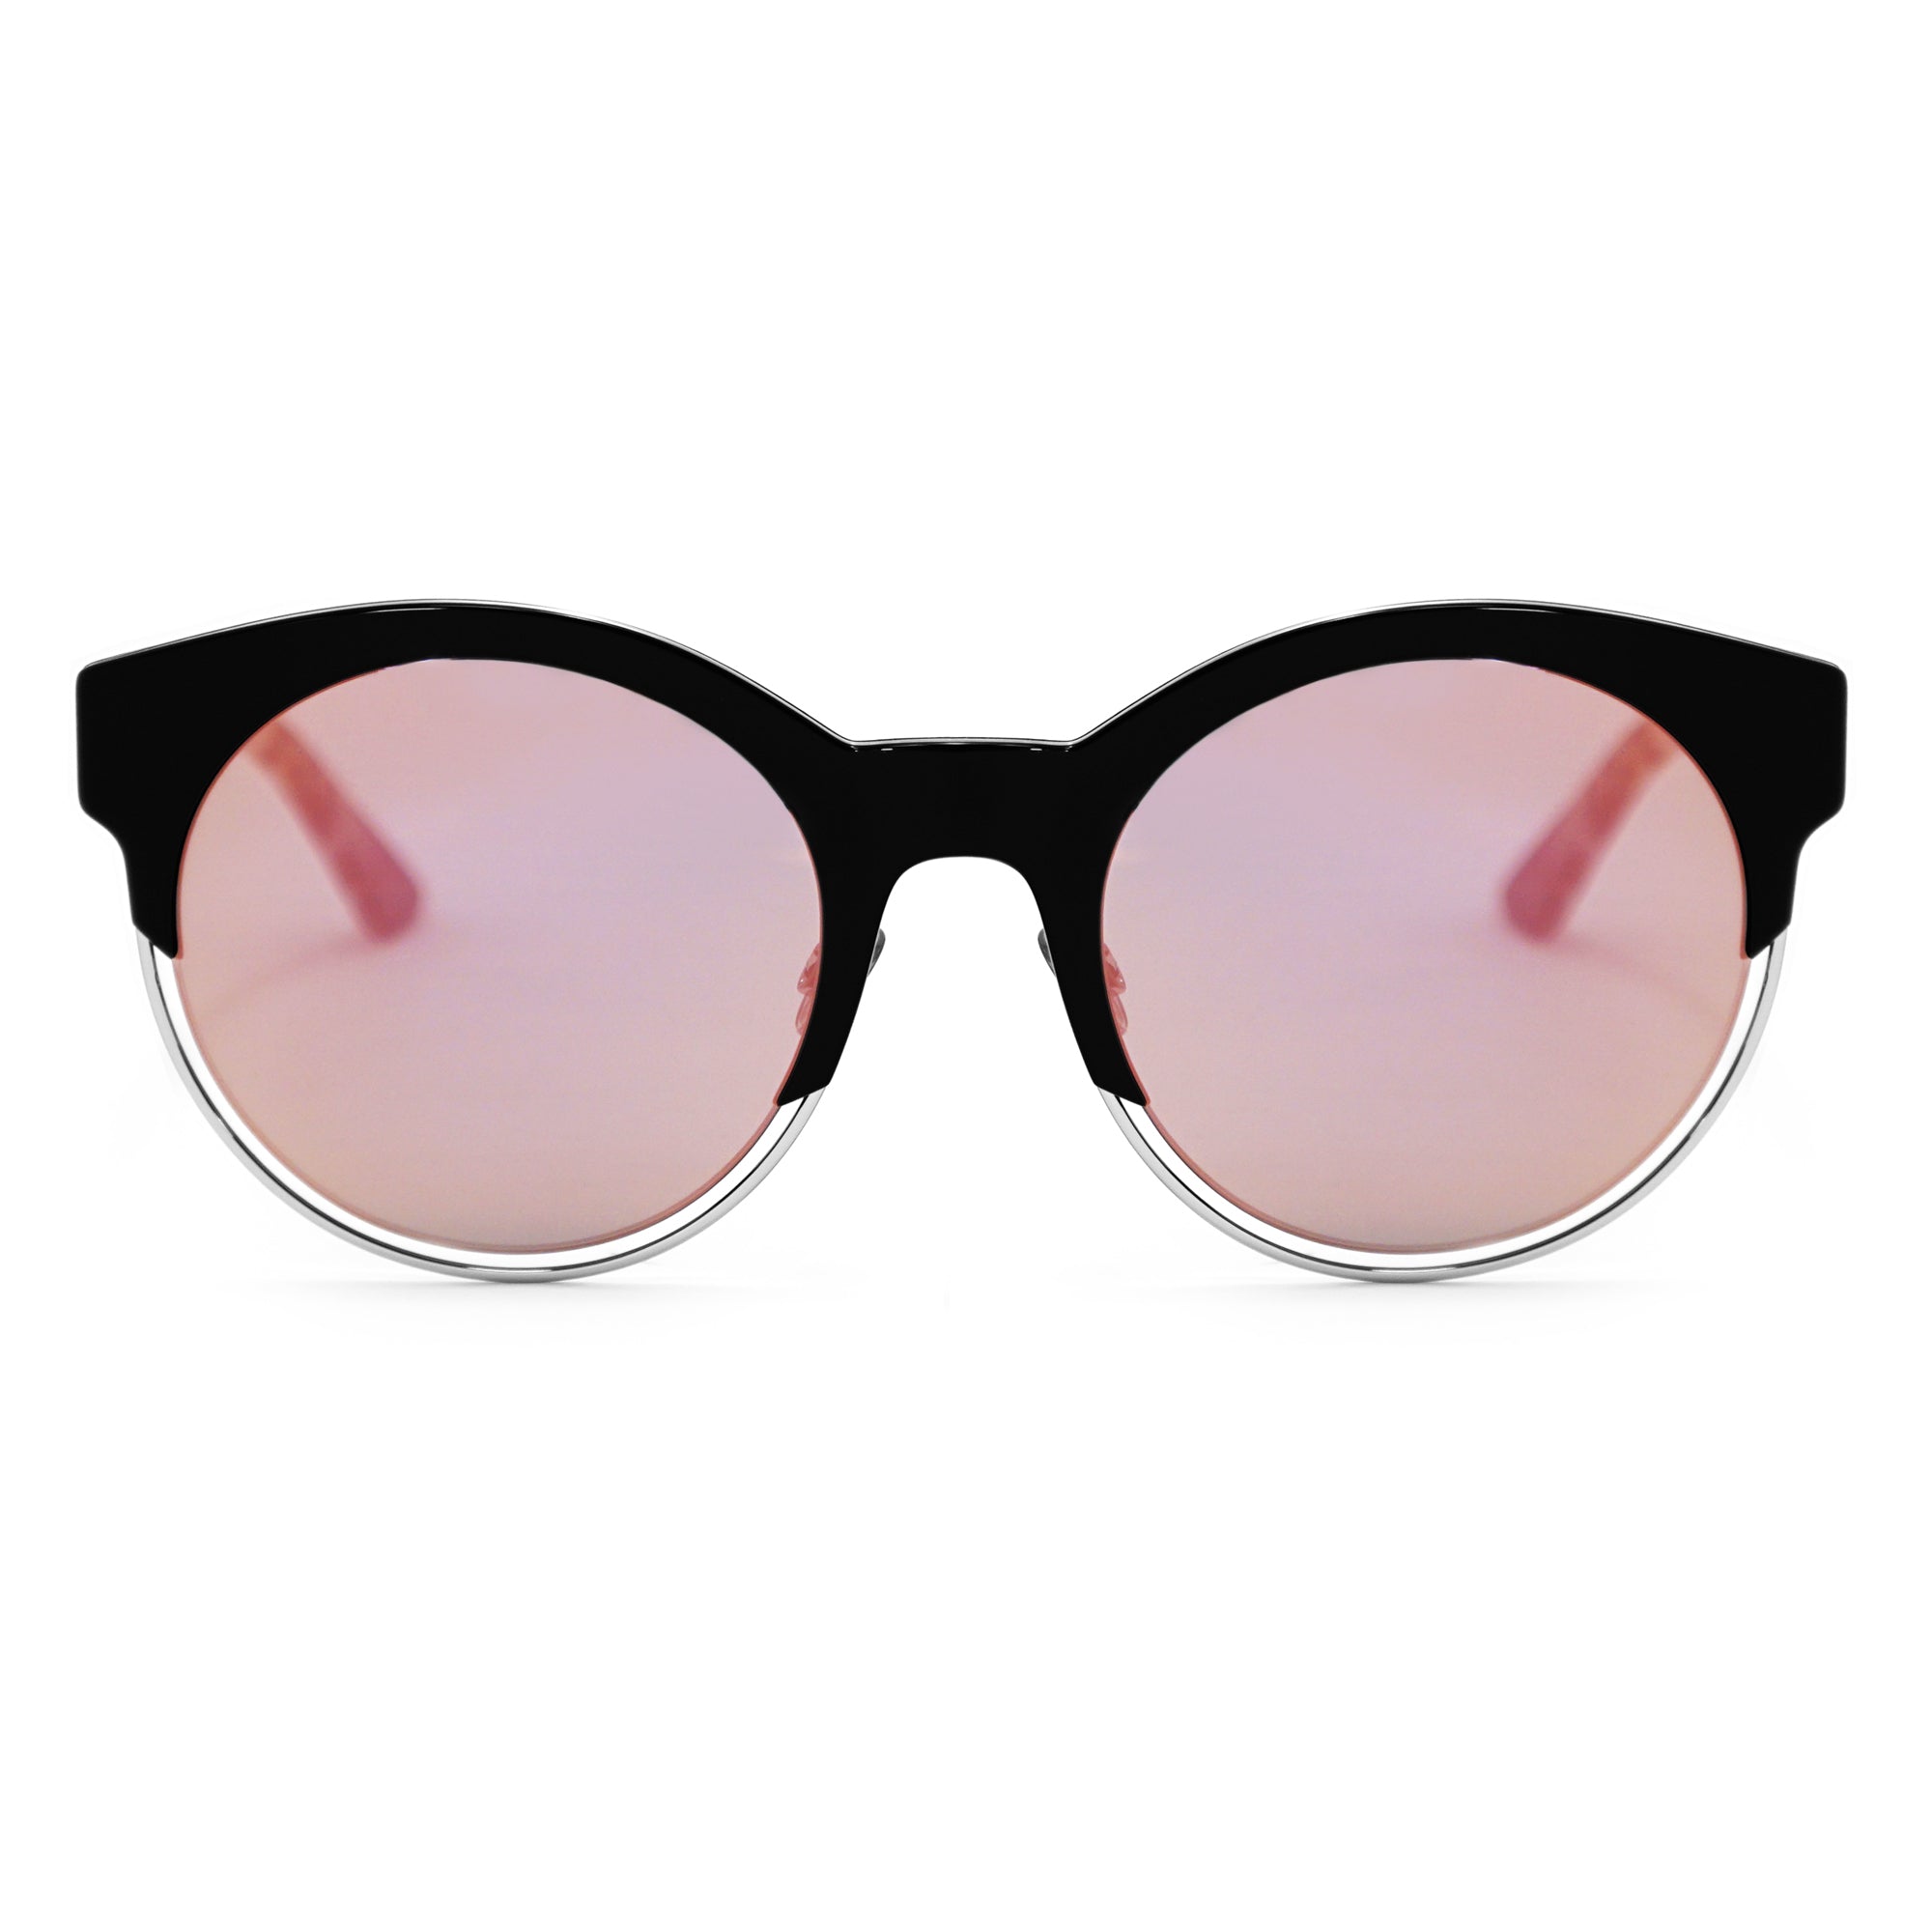 Dior Sideral Sunglasses DIORSIDERAL1 1W3C6 53